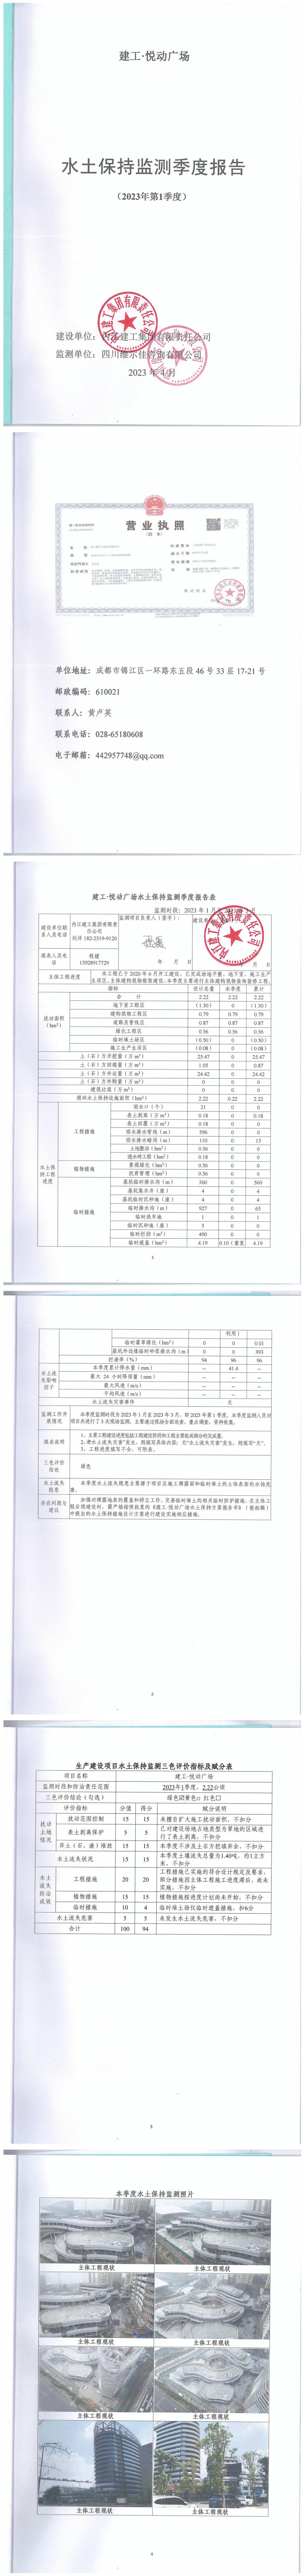 建工·悦动广场2023年1季度水土保持监测季报_00.jpg